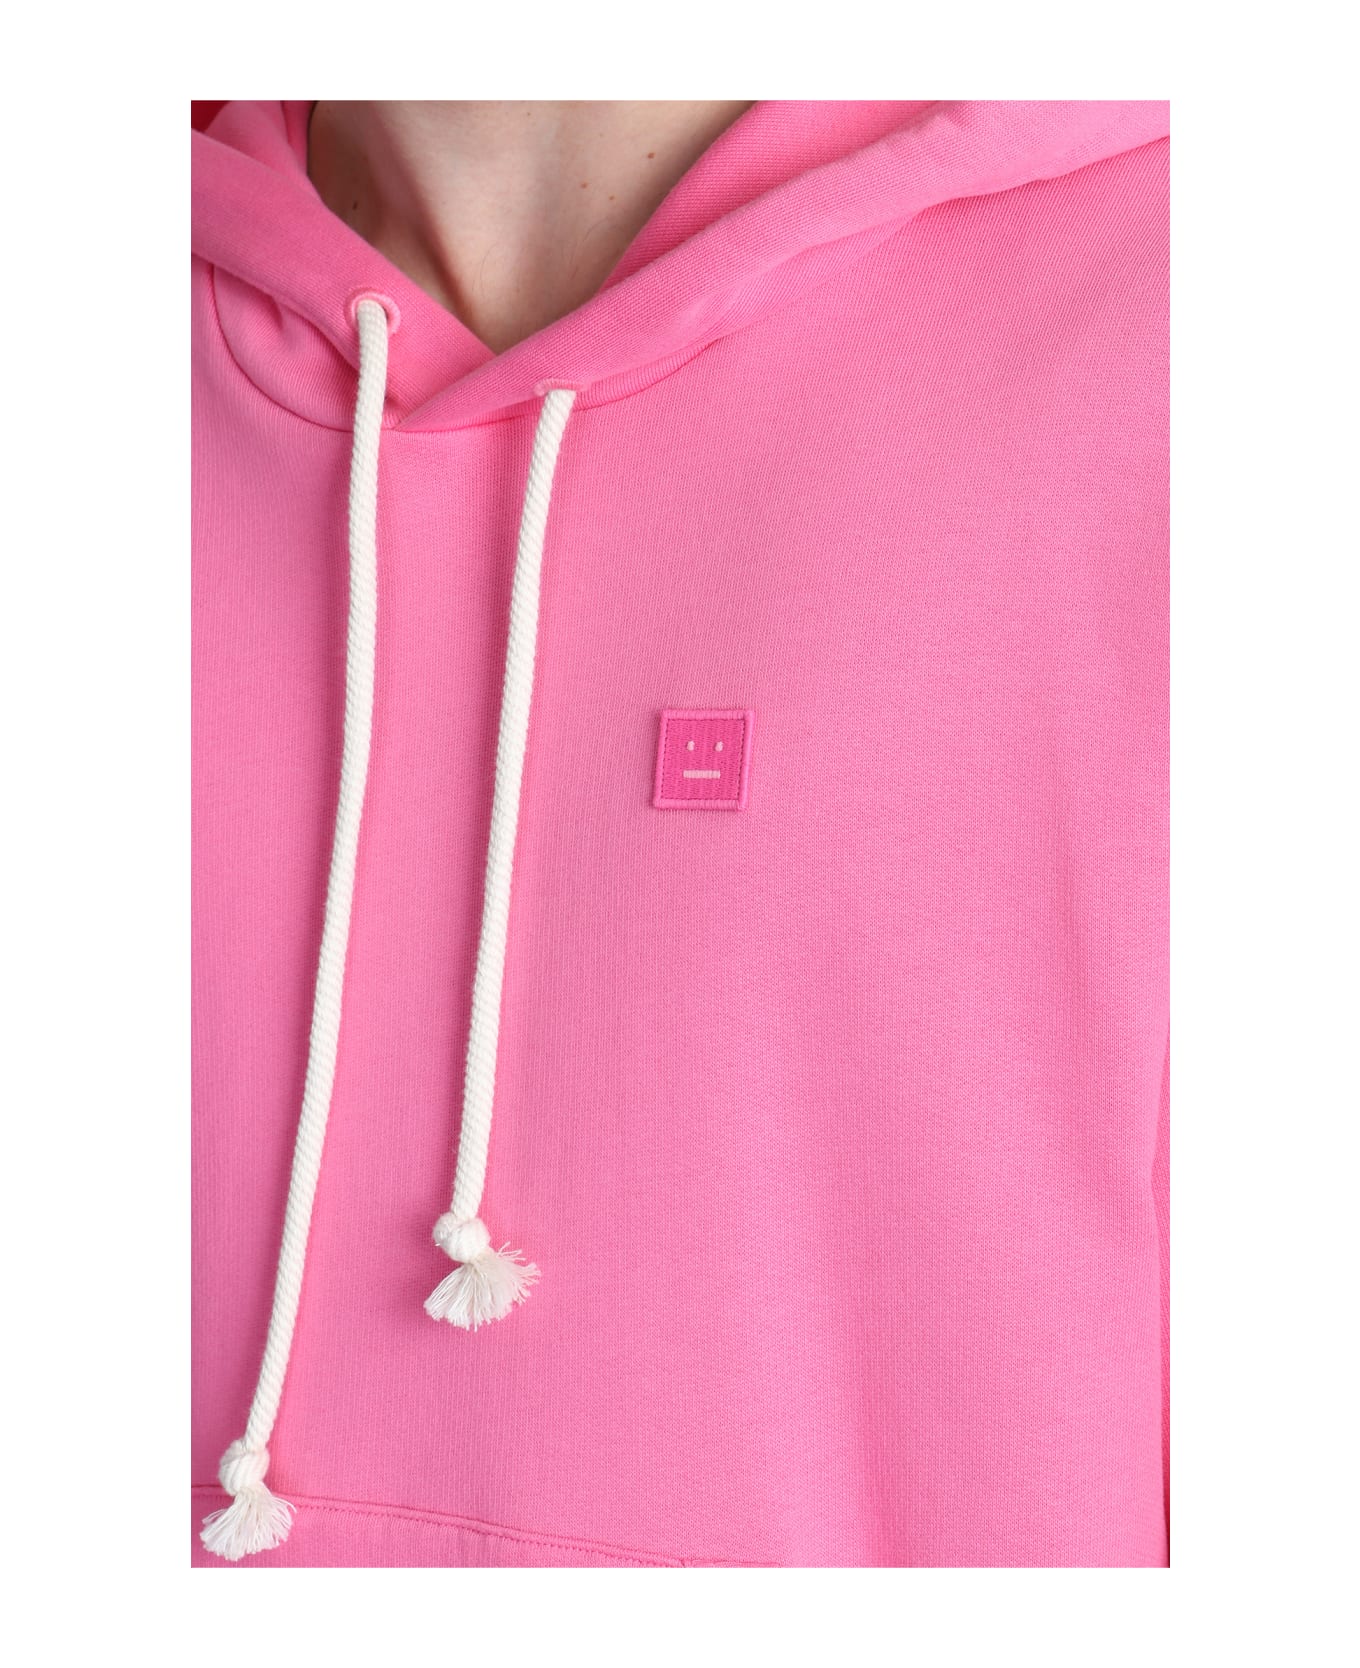 Acne Studios Sweatshirt In Rose-pink Cotton - rose-pink フリース